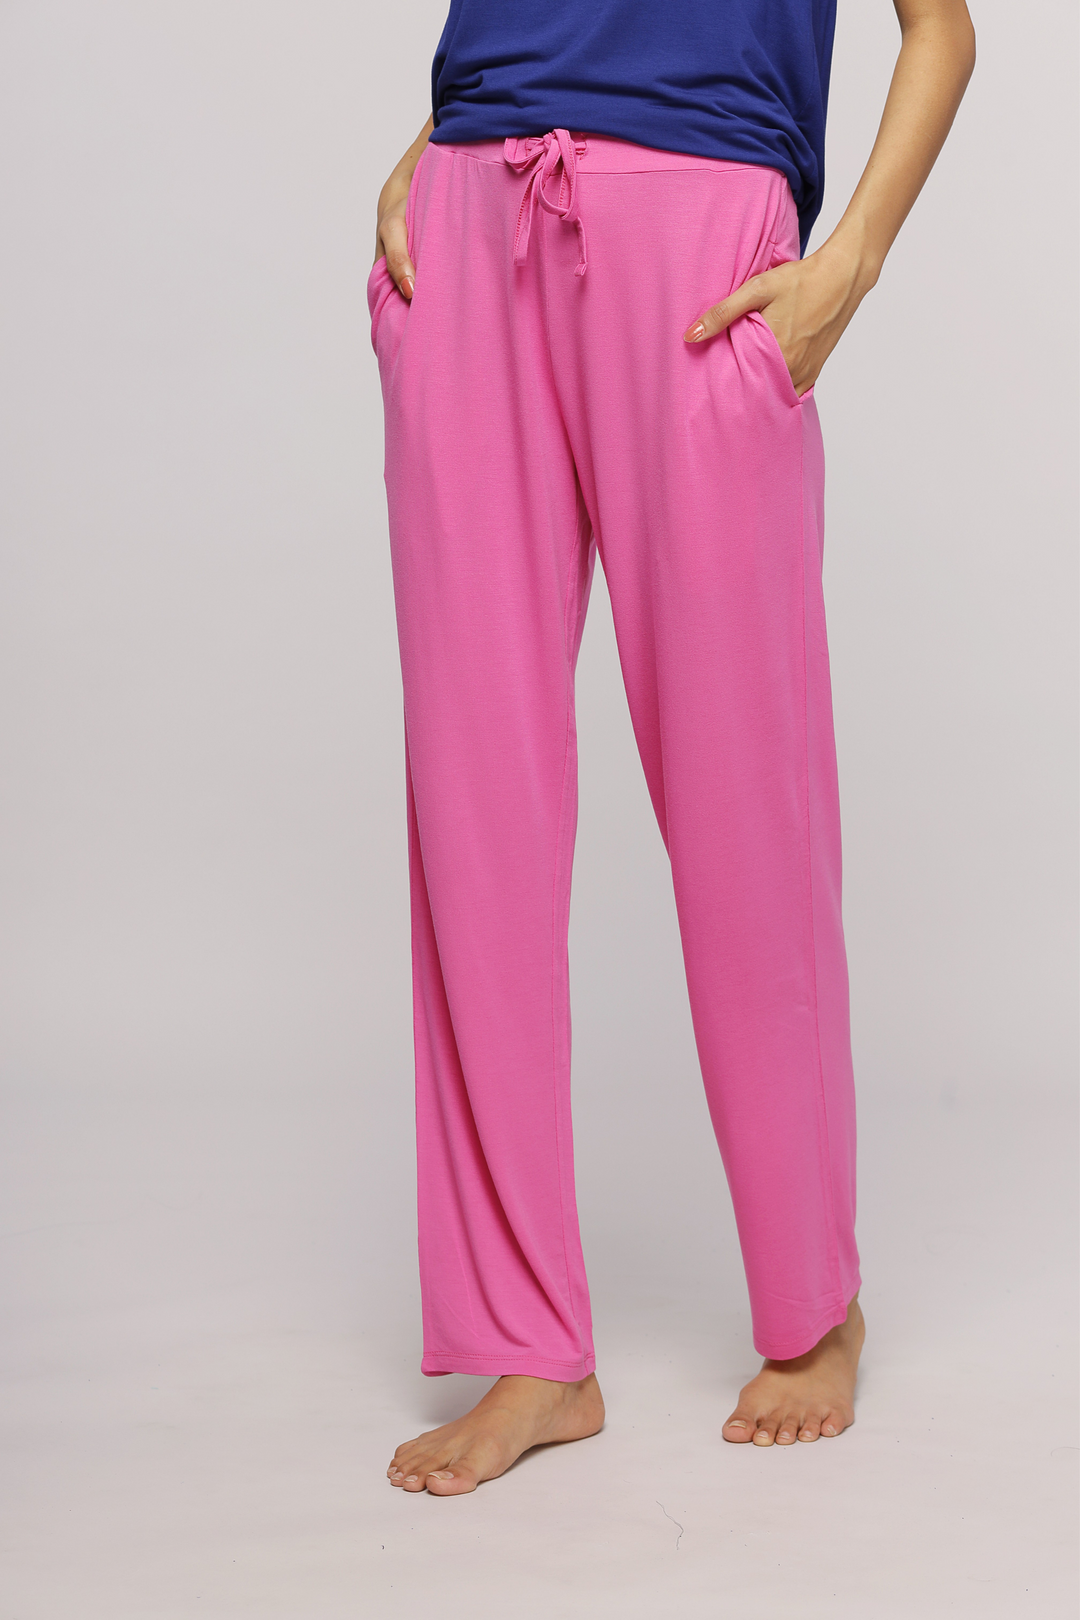 Glam Pink Straight Pajamas